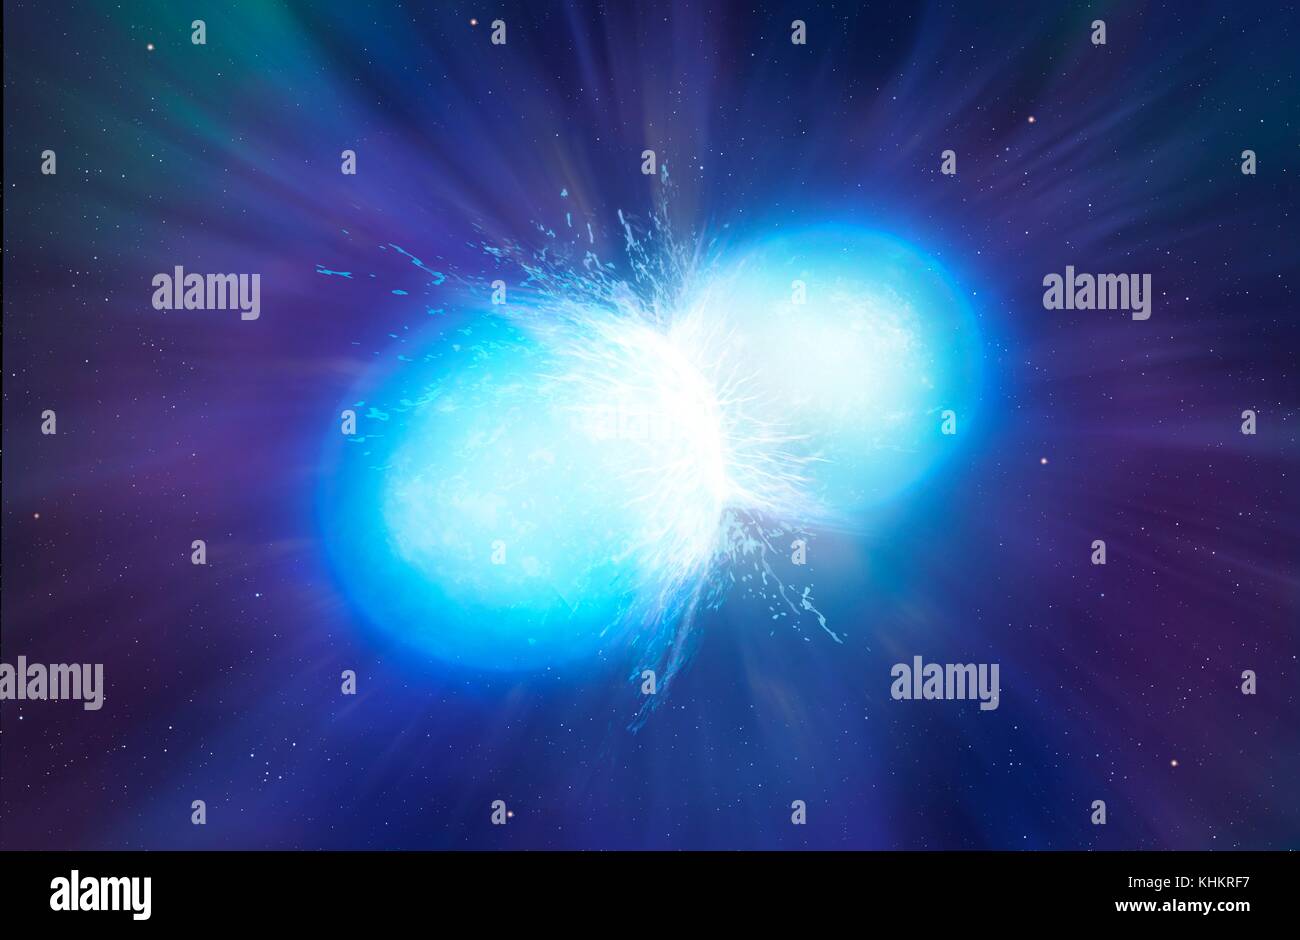 Le stelle di neutroni fusione, illustrazione. Le stelle di neutroni sono i resti delle stelle che hanno esaurito il combustibile e esplosa come supernova, eventualmente collassare in un nucleo superdense. Una tipica stella di neutroni ha una massa compresa tra 1.3 e 2.1 masse solari ma misure solo 10km di diametro. Le stelle di neutroni possono esistere come appaiati o binario, stelle. Visto qui è la fase finale, appena prima della fusione completa. Questo determina una violenta raffica di radiazione magnetica della durata di millisecondi. È suggerito che questa è la fonte di brevi lampi di raggi gamma. Foto Stock